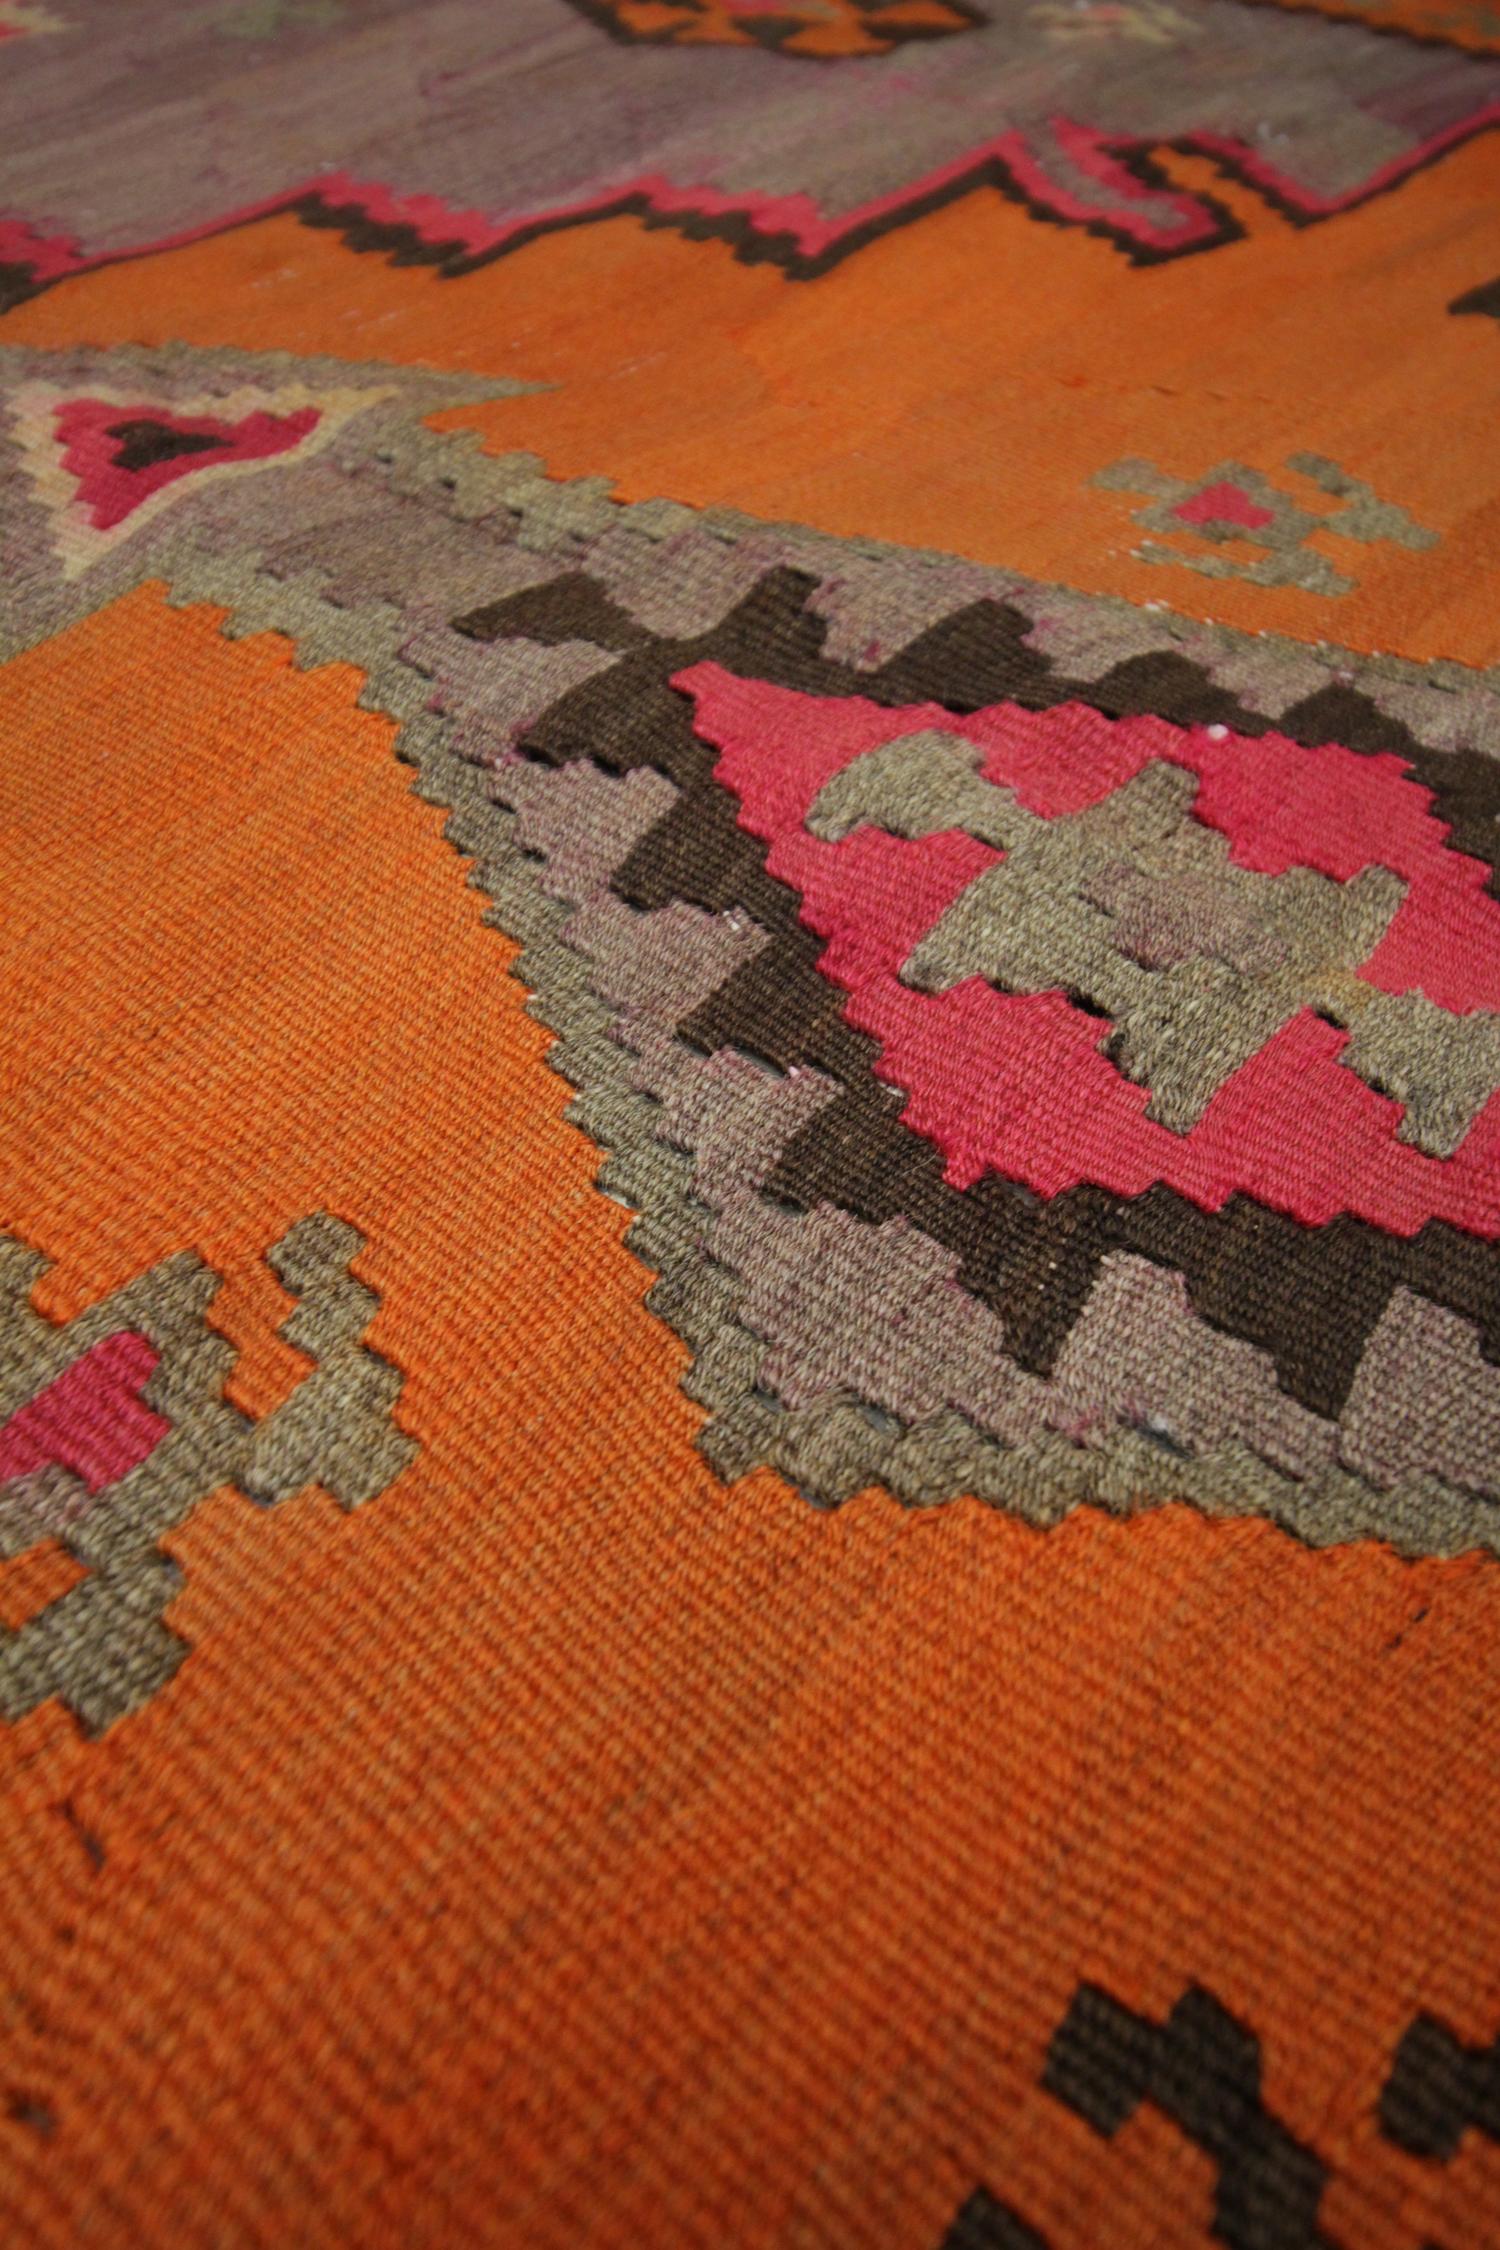 Azerbaijani Purple Wool Kilim Rug Handmade Carpet Area Rug Vintage Tribal